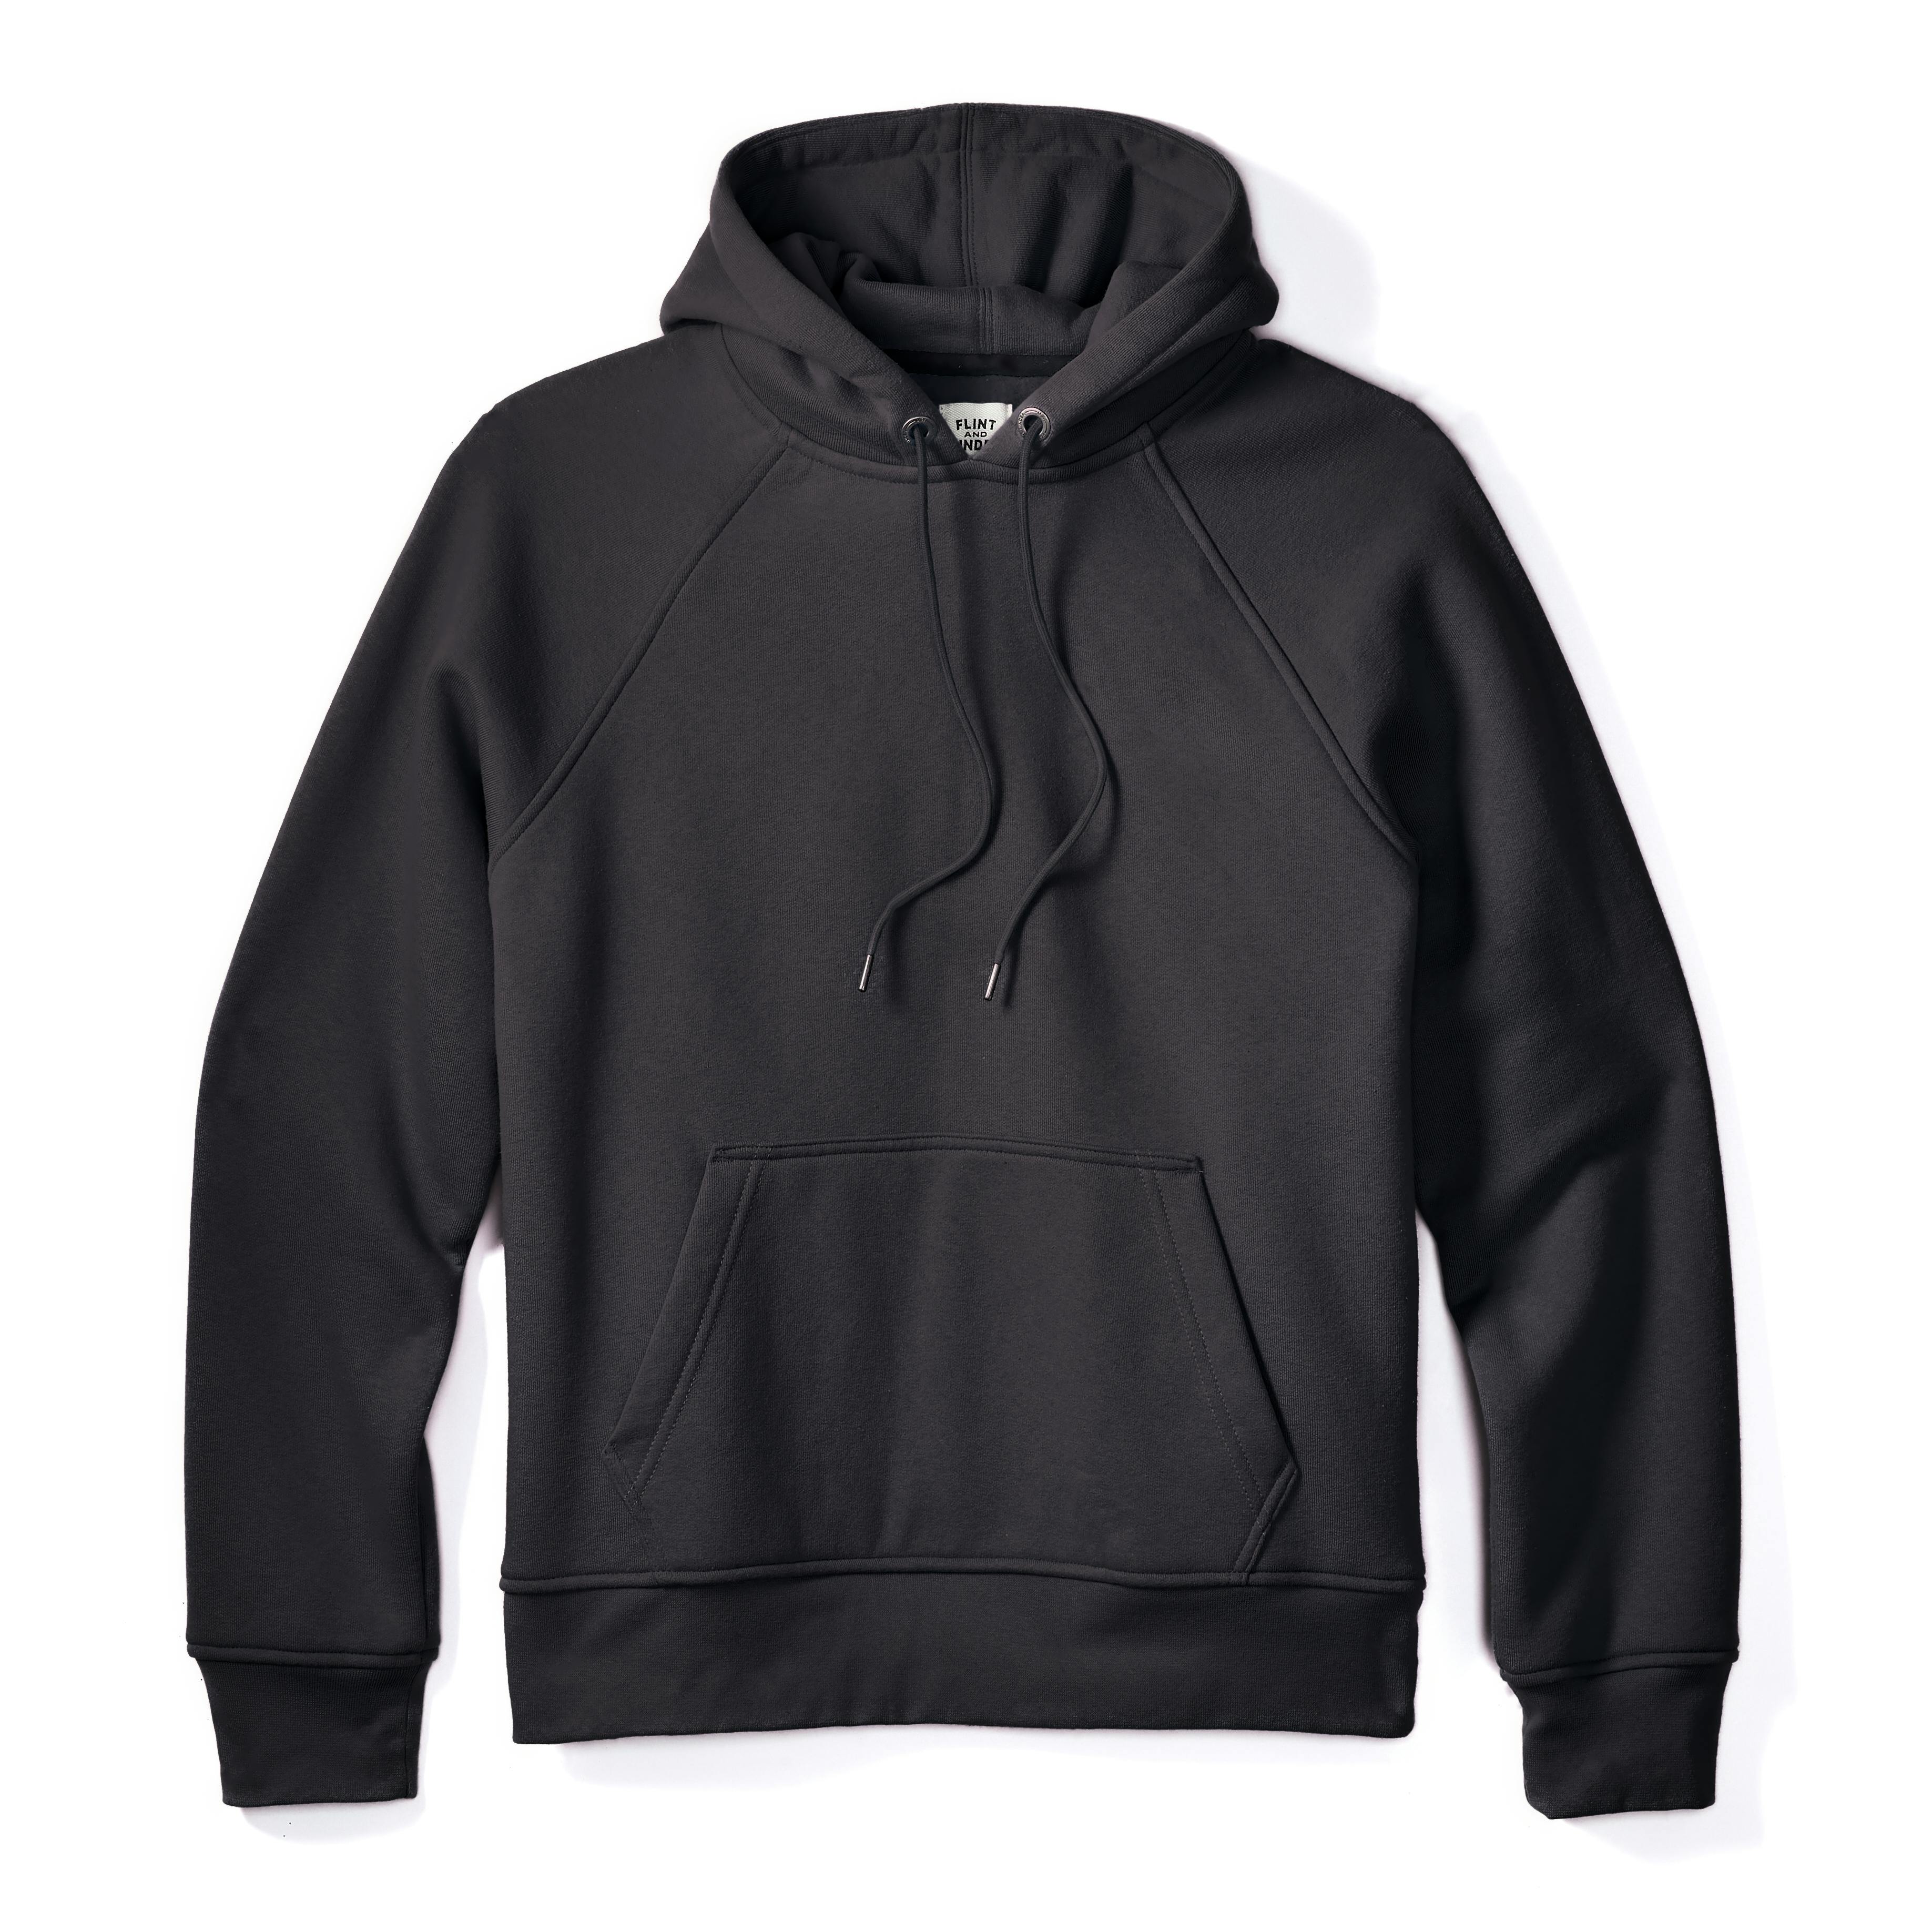 hoodie black and